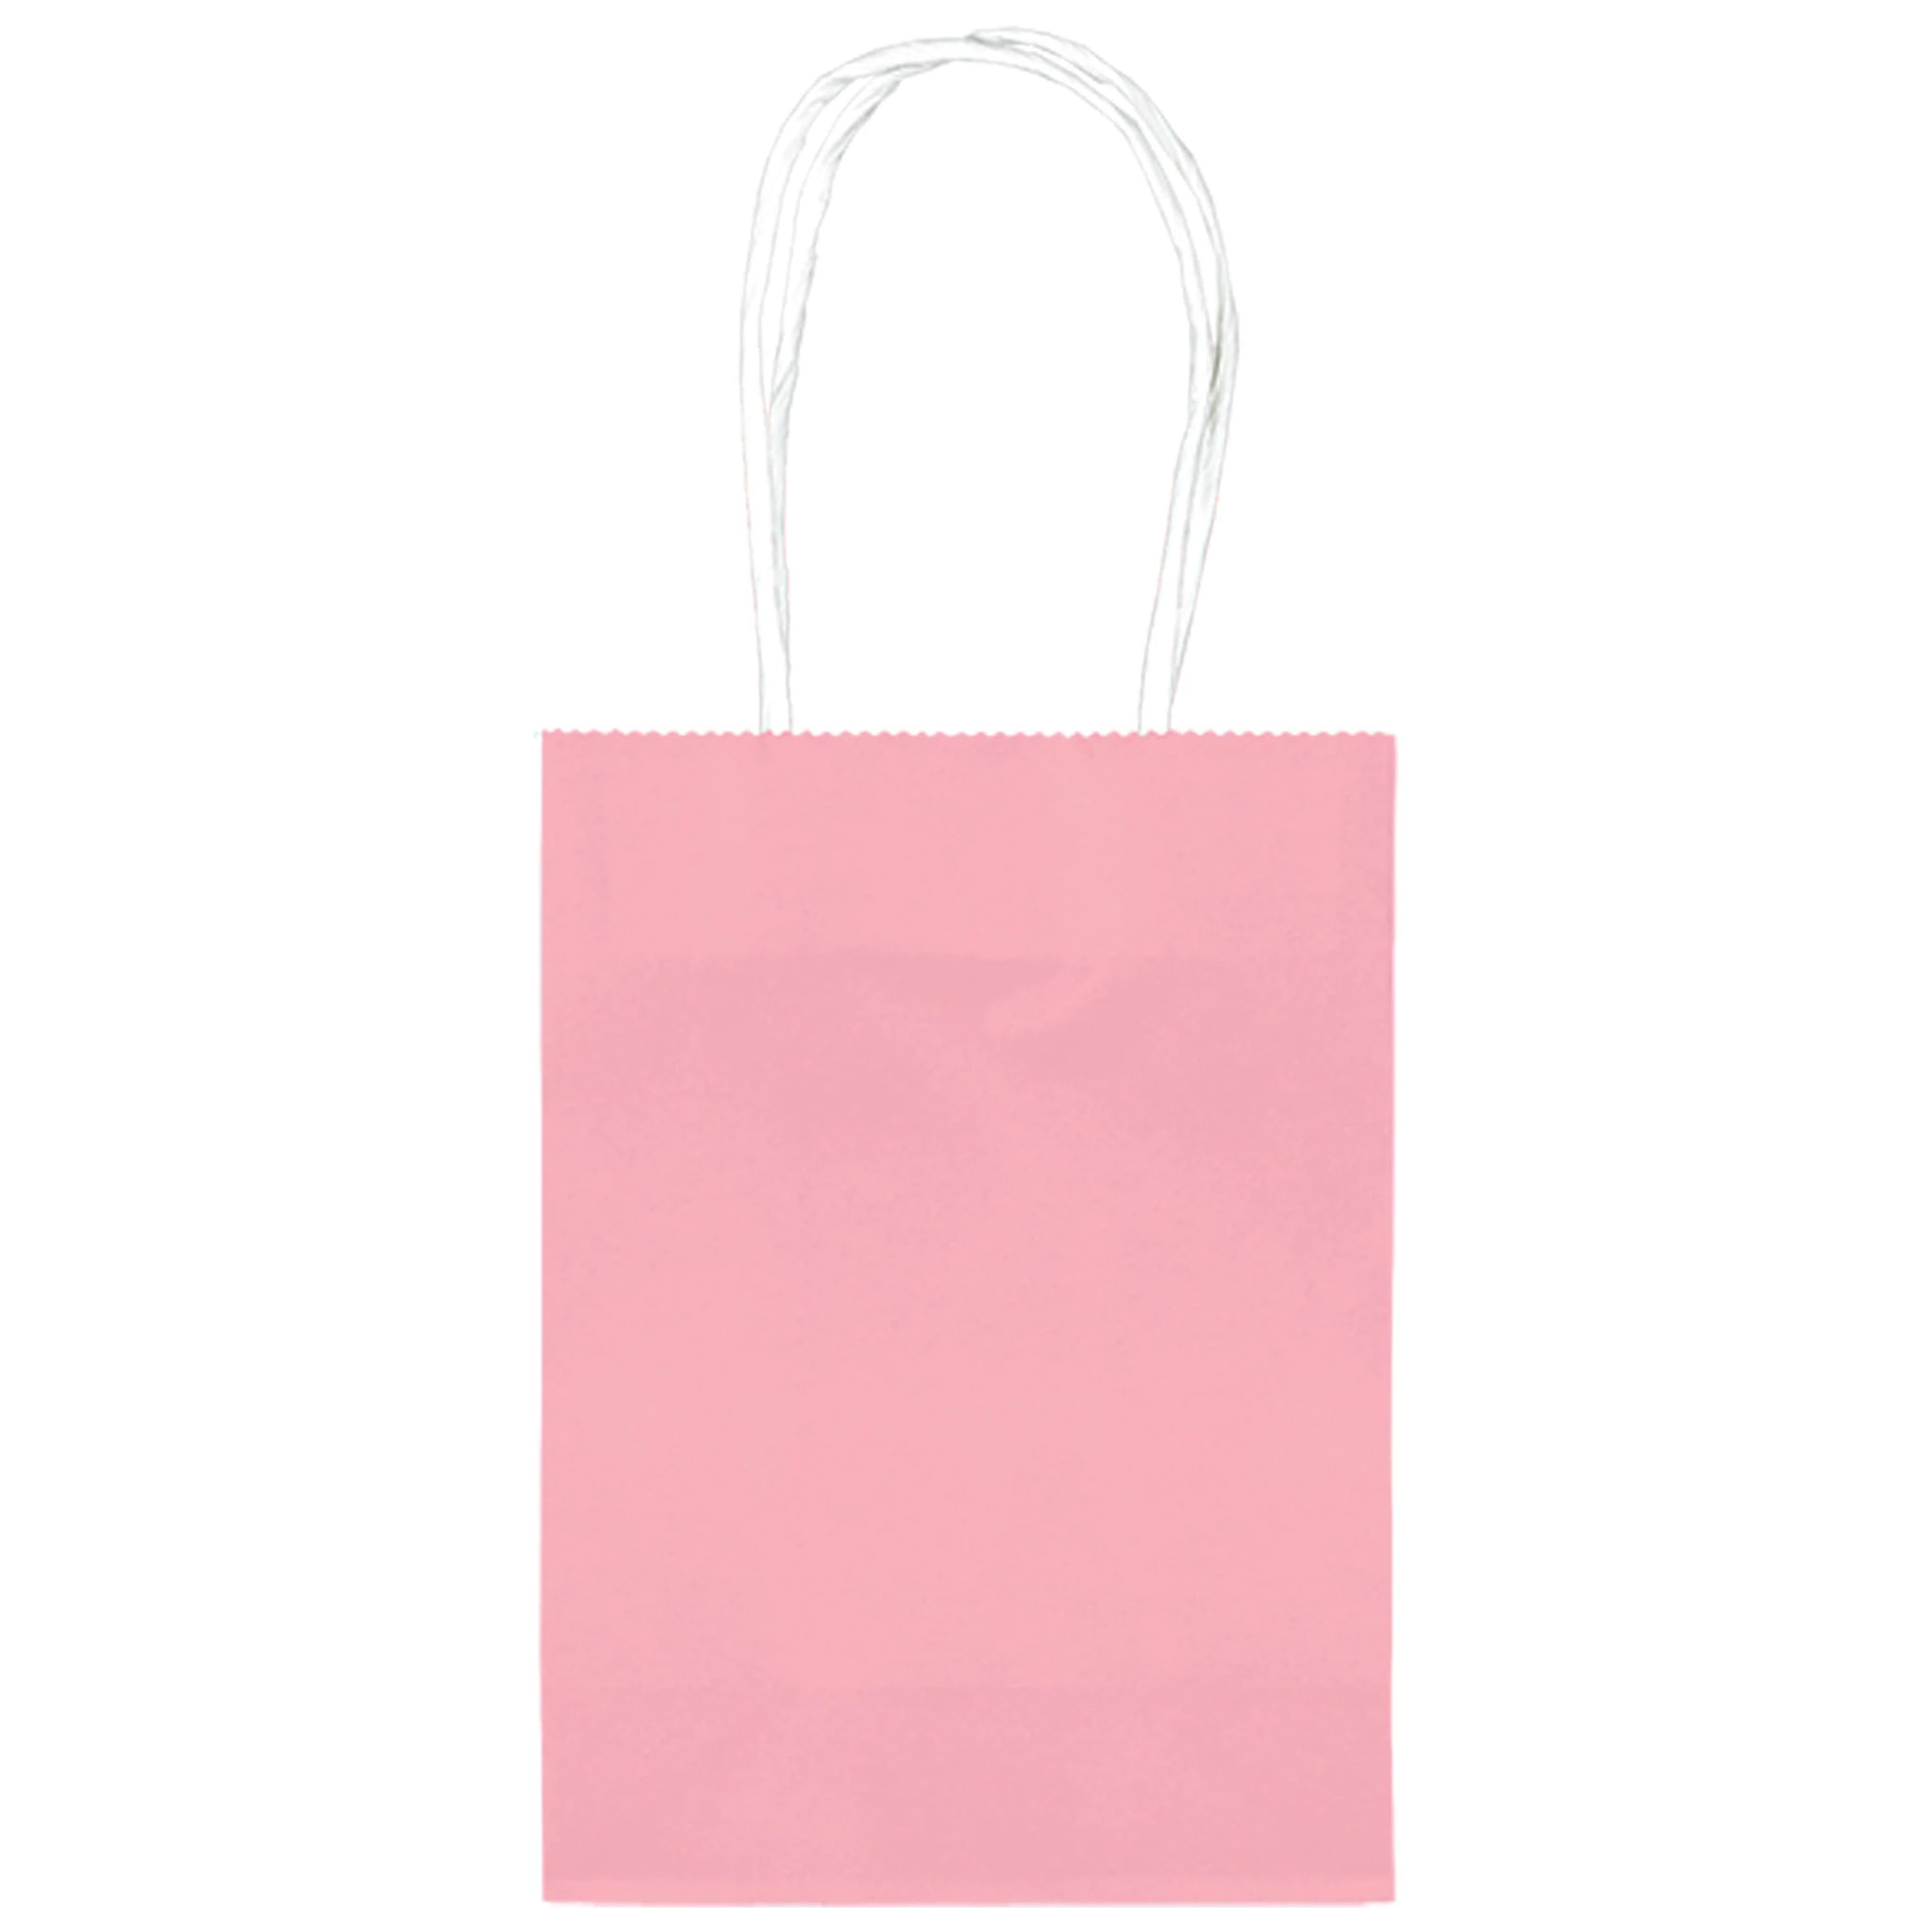  Paquete de 100 bolsas pequeñas de regalo rosas de 5.9 x 3.15 x  8.26 pulgadas, bolsas de papel kraft con asas a granel para regalos de  fiesta de cumpleaños, bolsas de